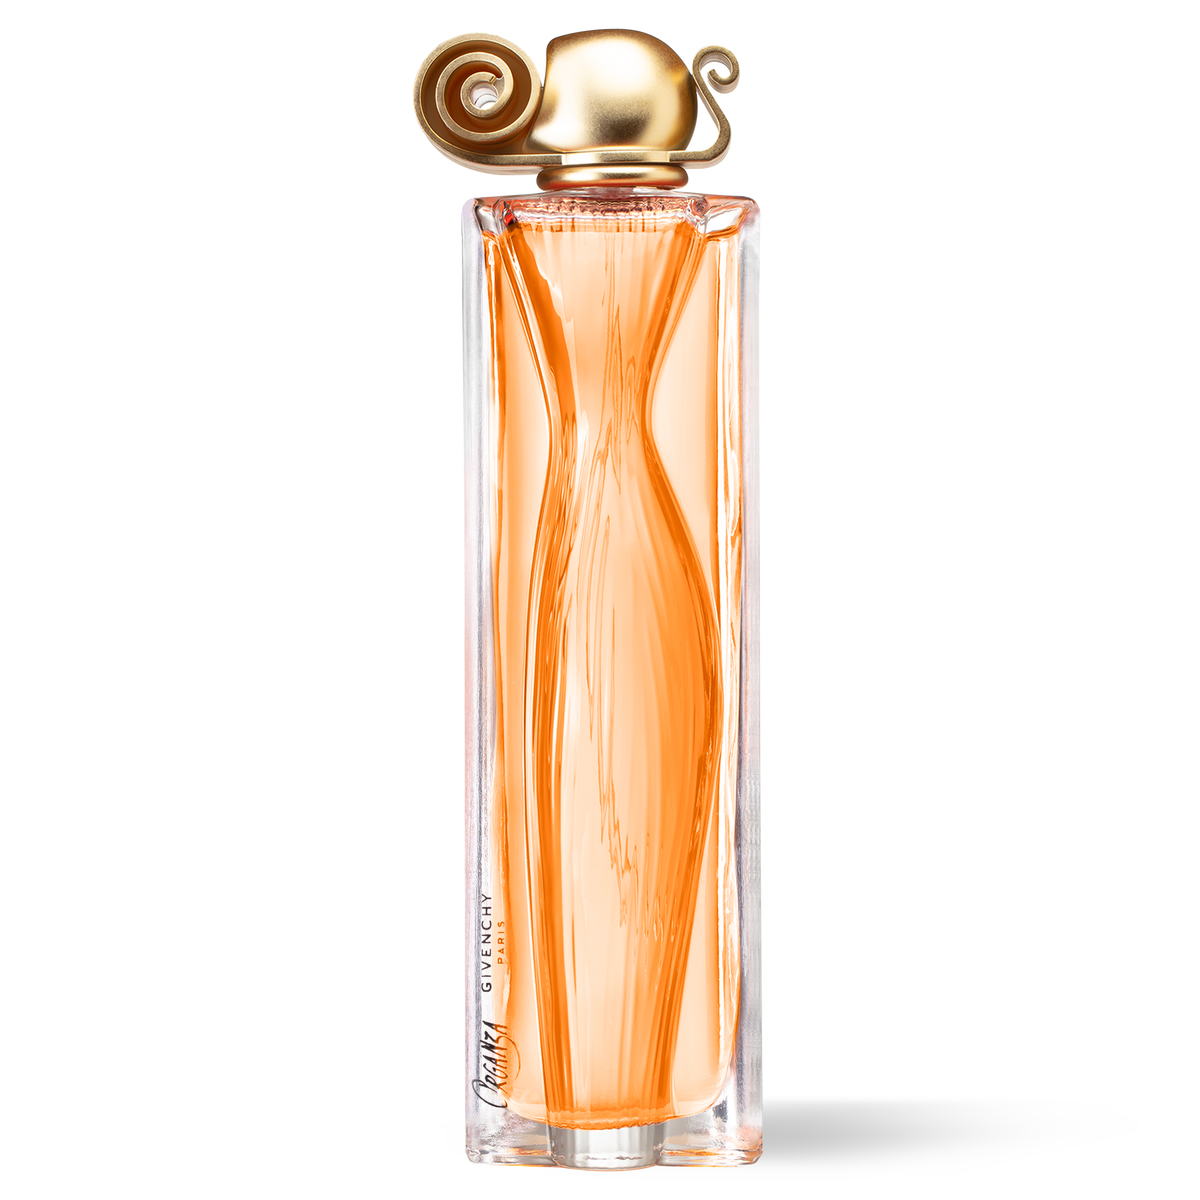 Organza By Givenchy For Women. Eau De Parfum Spray 3.3 Ounces 